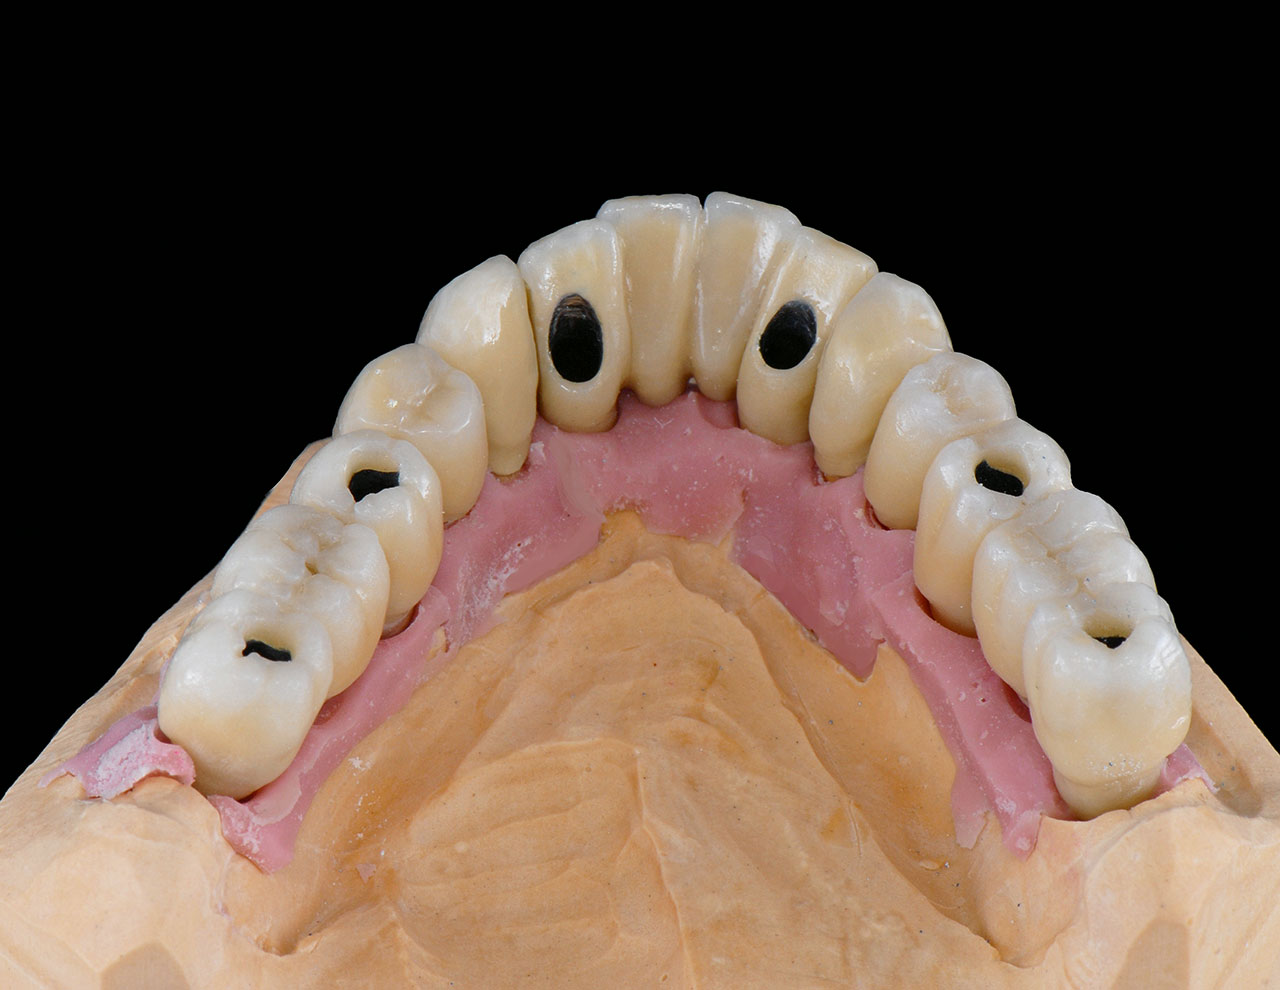 Abb. 30 Das Brennergebnis nach dem ersten Dentinbrand zeigt, dass das Volumen unterdurchschnittlich geschrumpft ist.